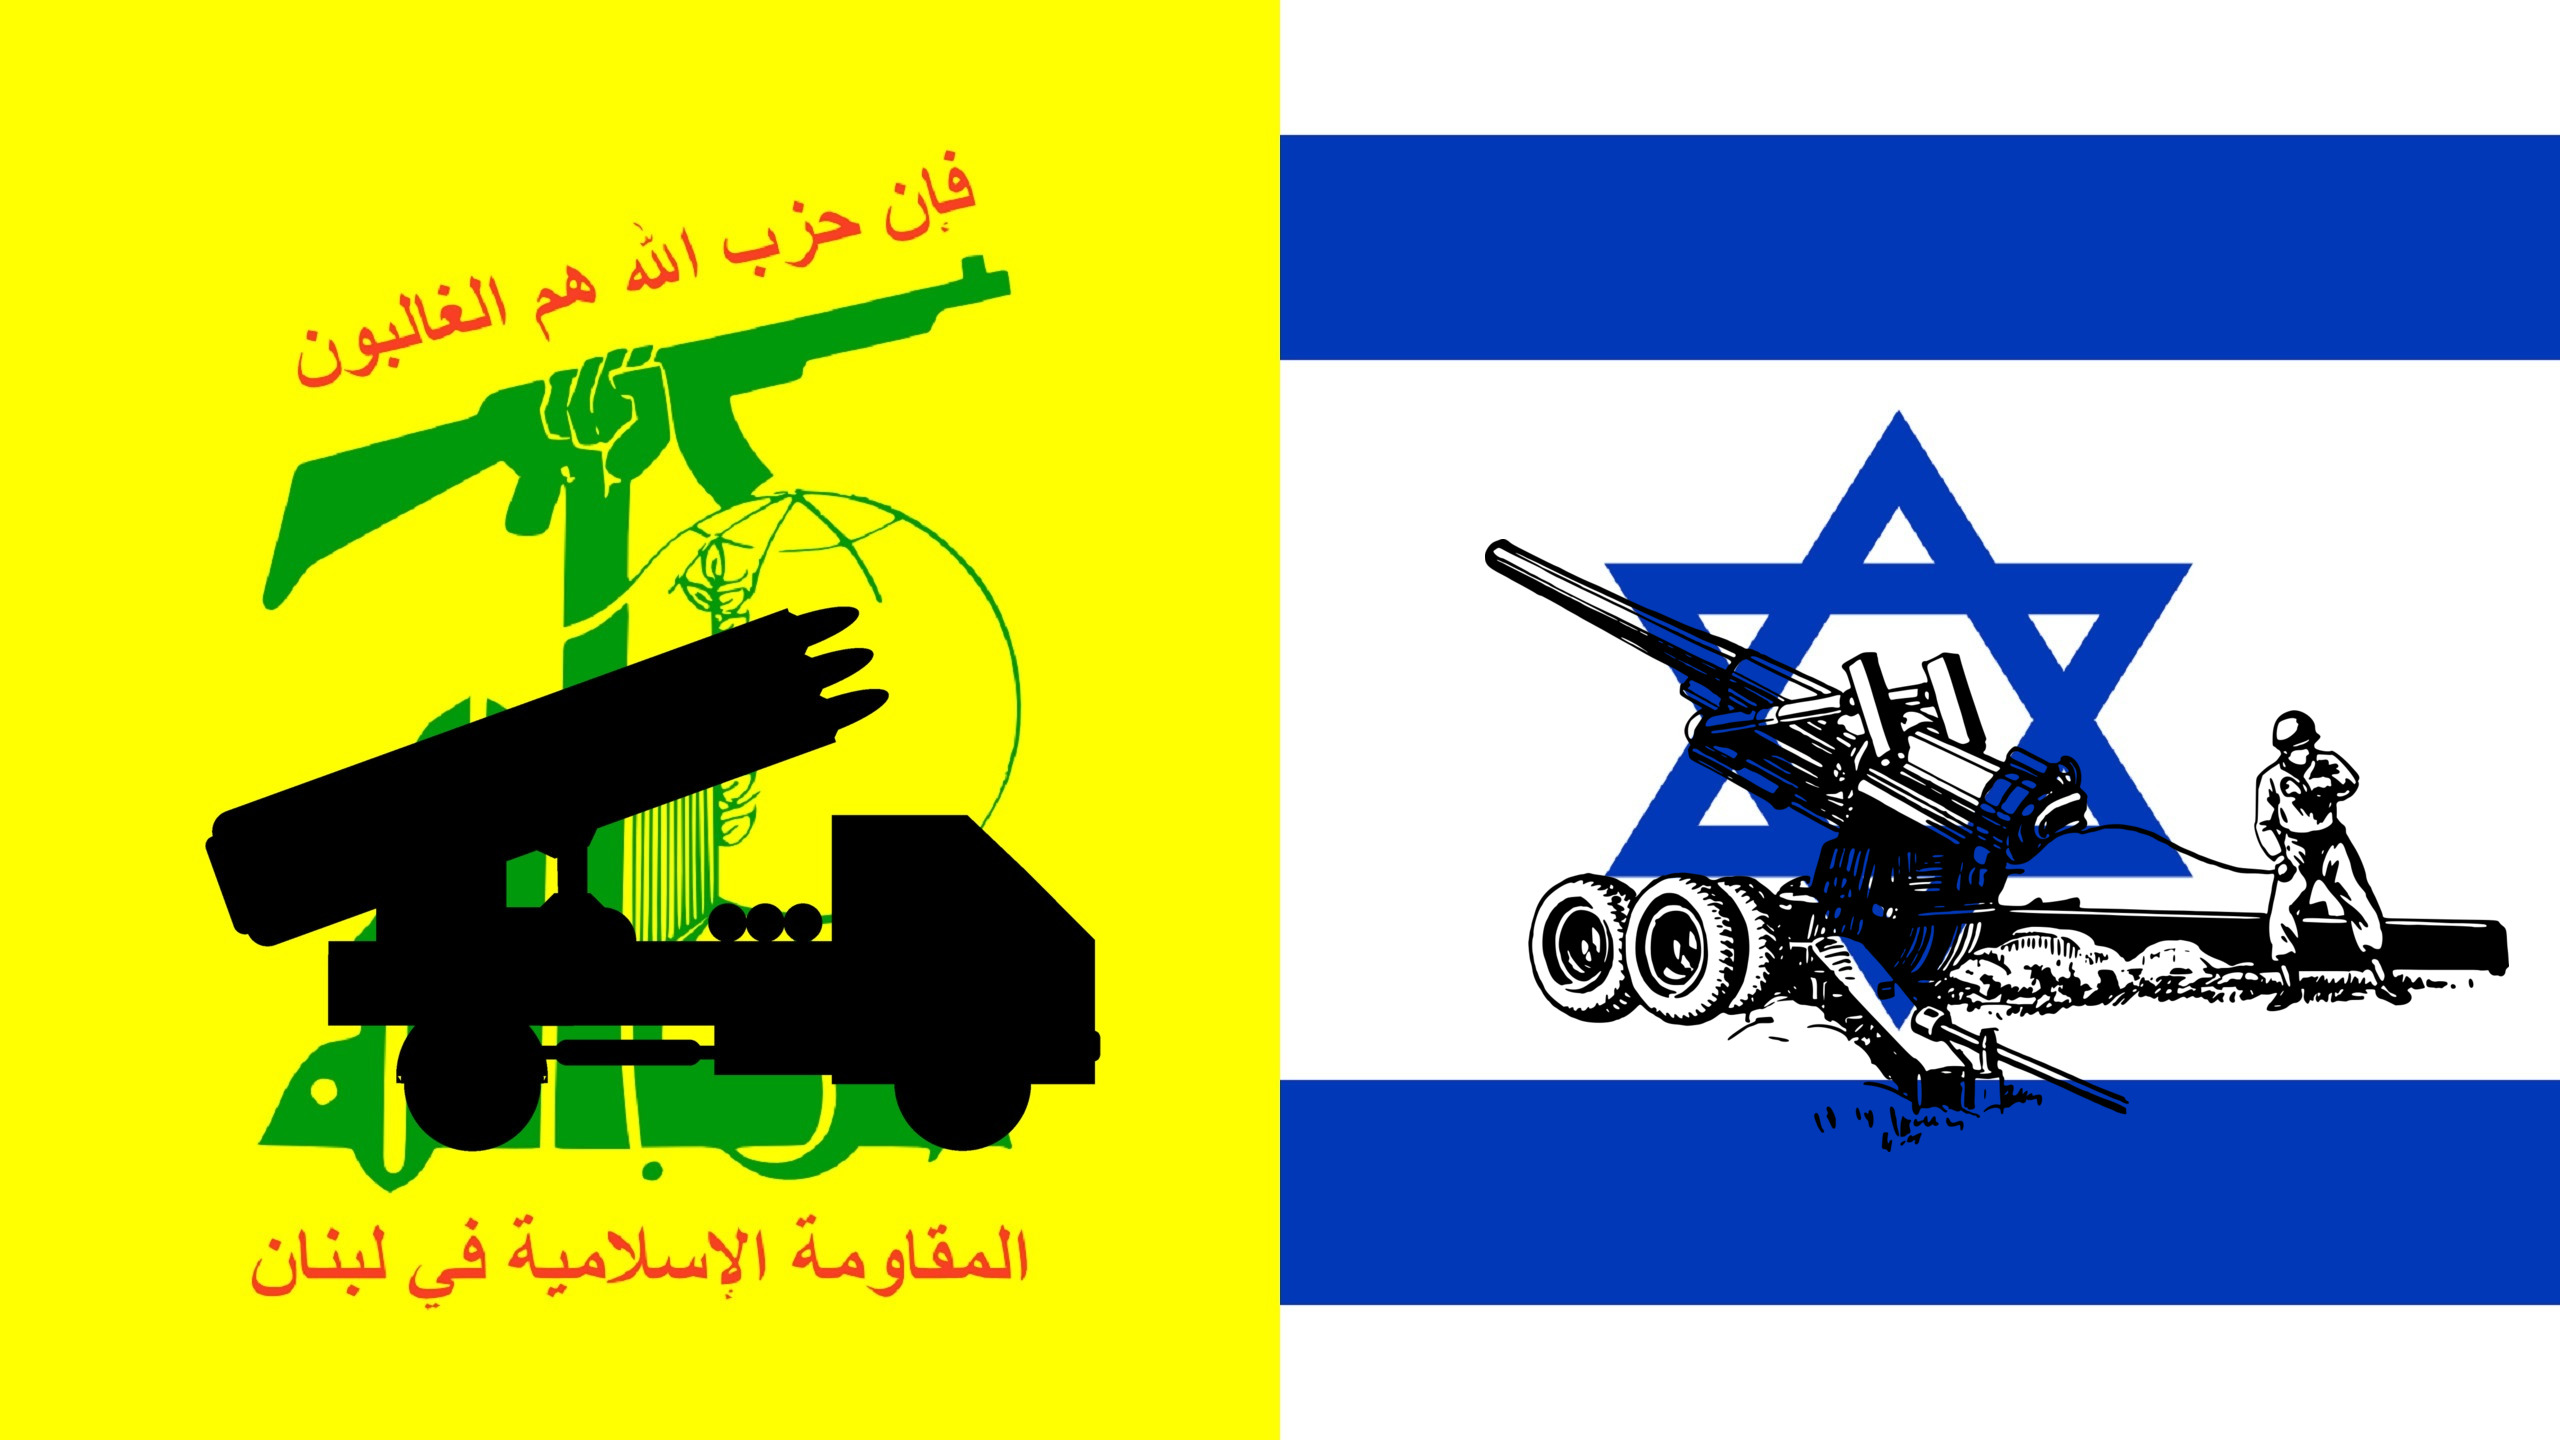 "Hizbullah, İsrail Savaşını Genişletiyor"